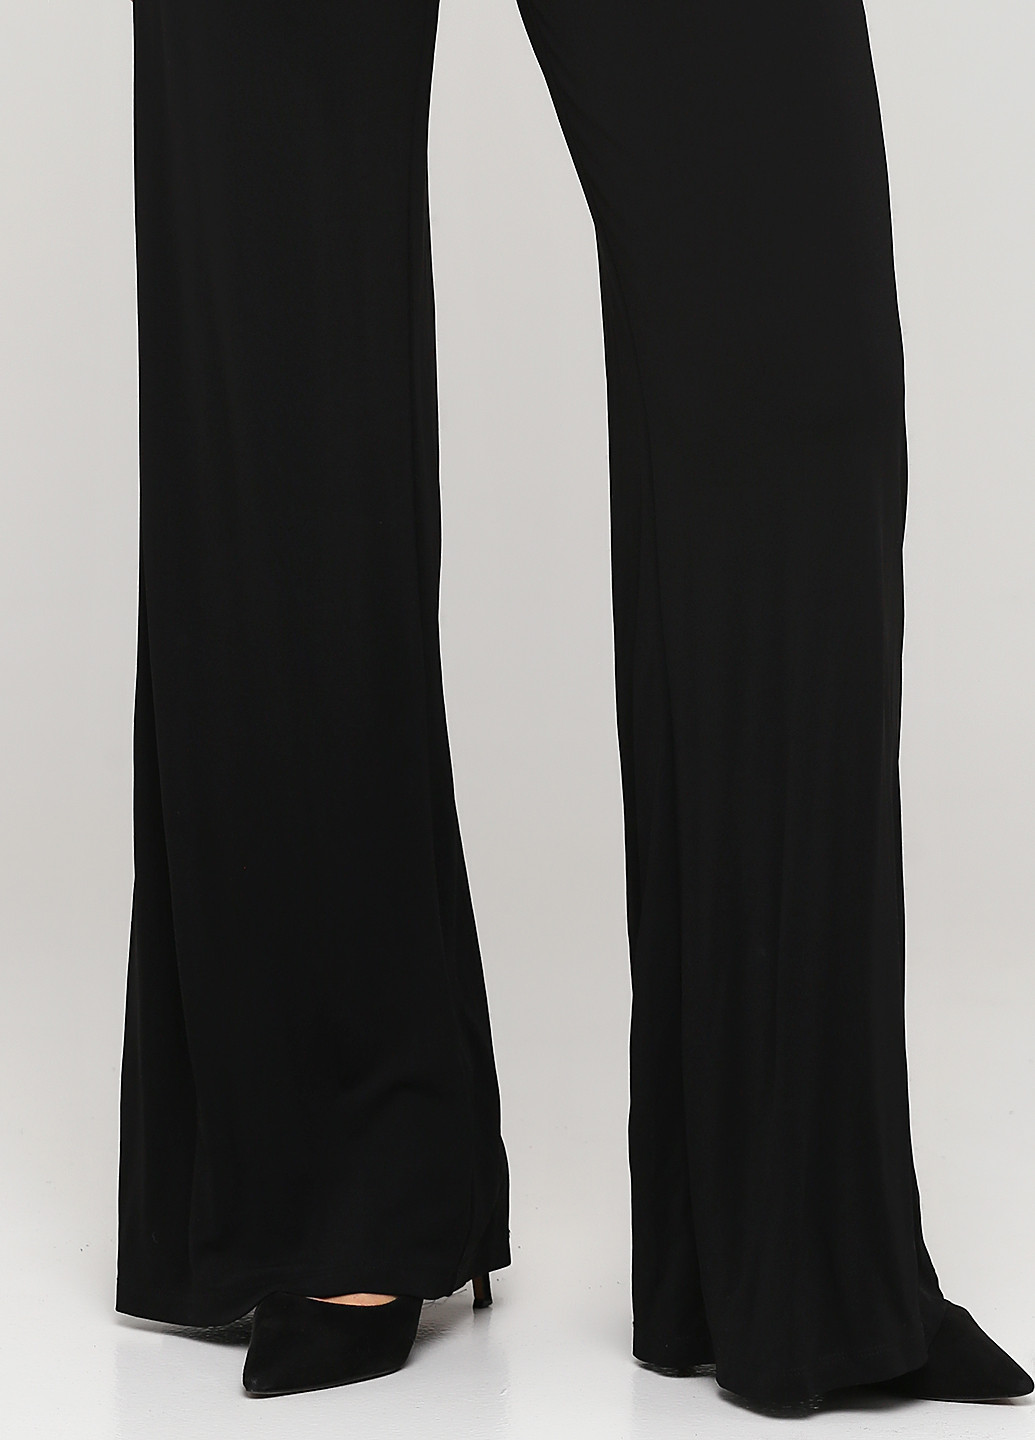 Комбинезон Ralph Lauren комбинезон-брюки однотонный чёрный кэжуал вискоза, трикотаж